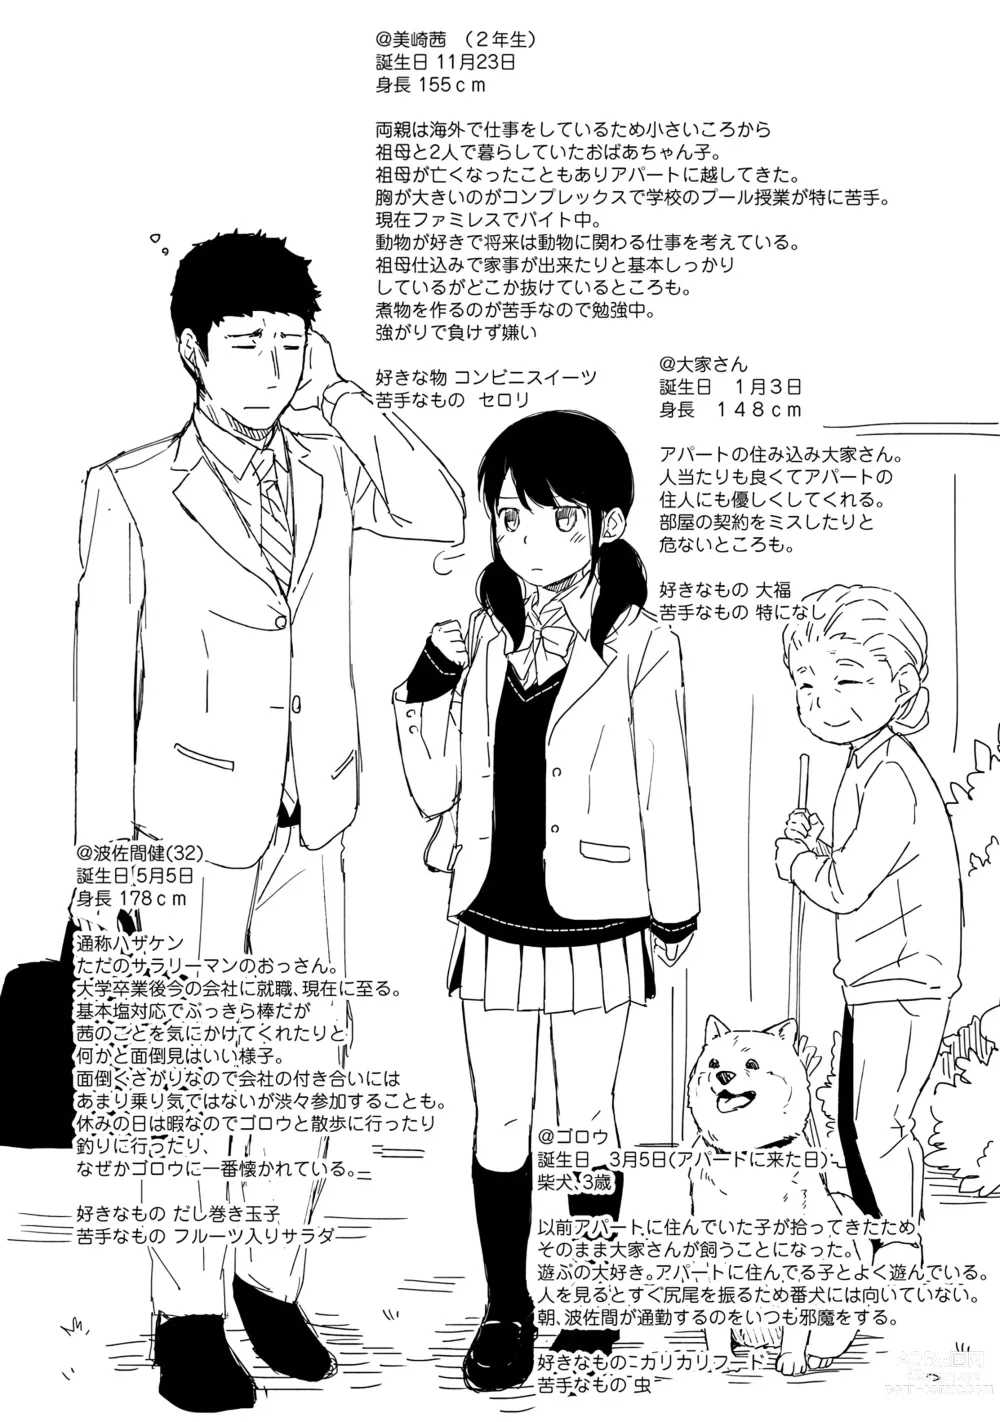 Page 194 of manga 1LDK+JK Ikinari Doukyo? Micchaku!? Hatsu Ecchi!!? Vol. 1